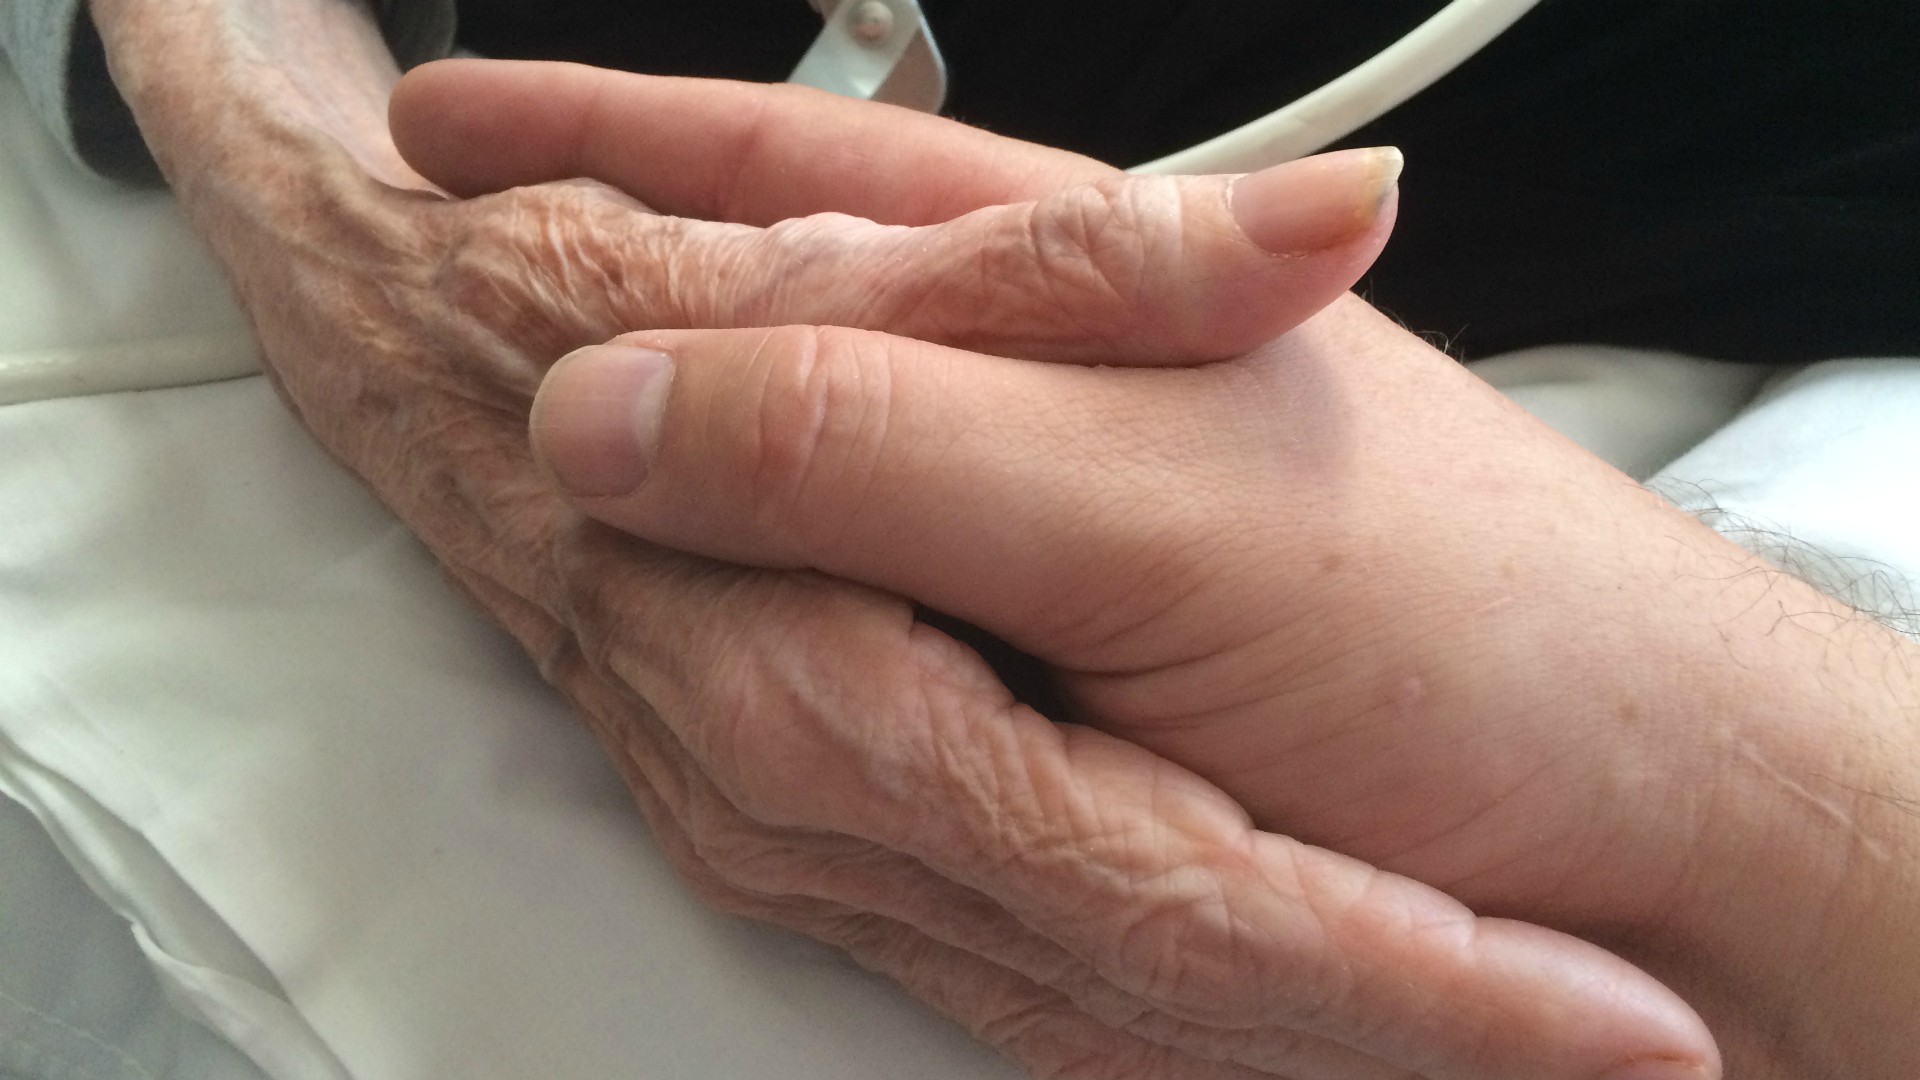 Les soins palliatifs visent à soulager les souffrances des personnes en fin de vie | Photo: Mercurywoodrose/Wikimedia Commons/CC BY-SA 4.0